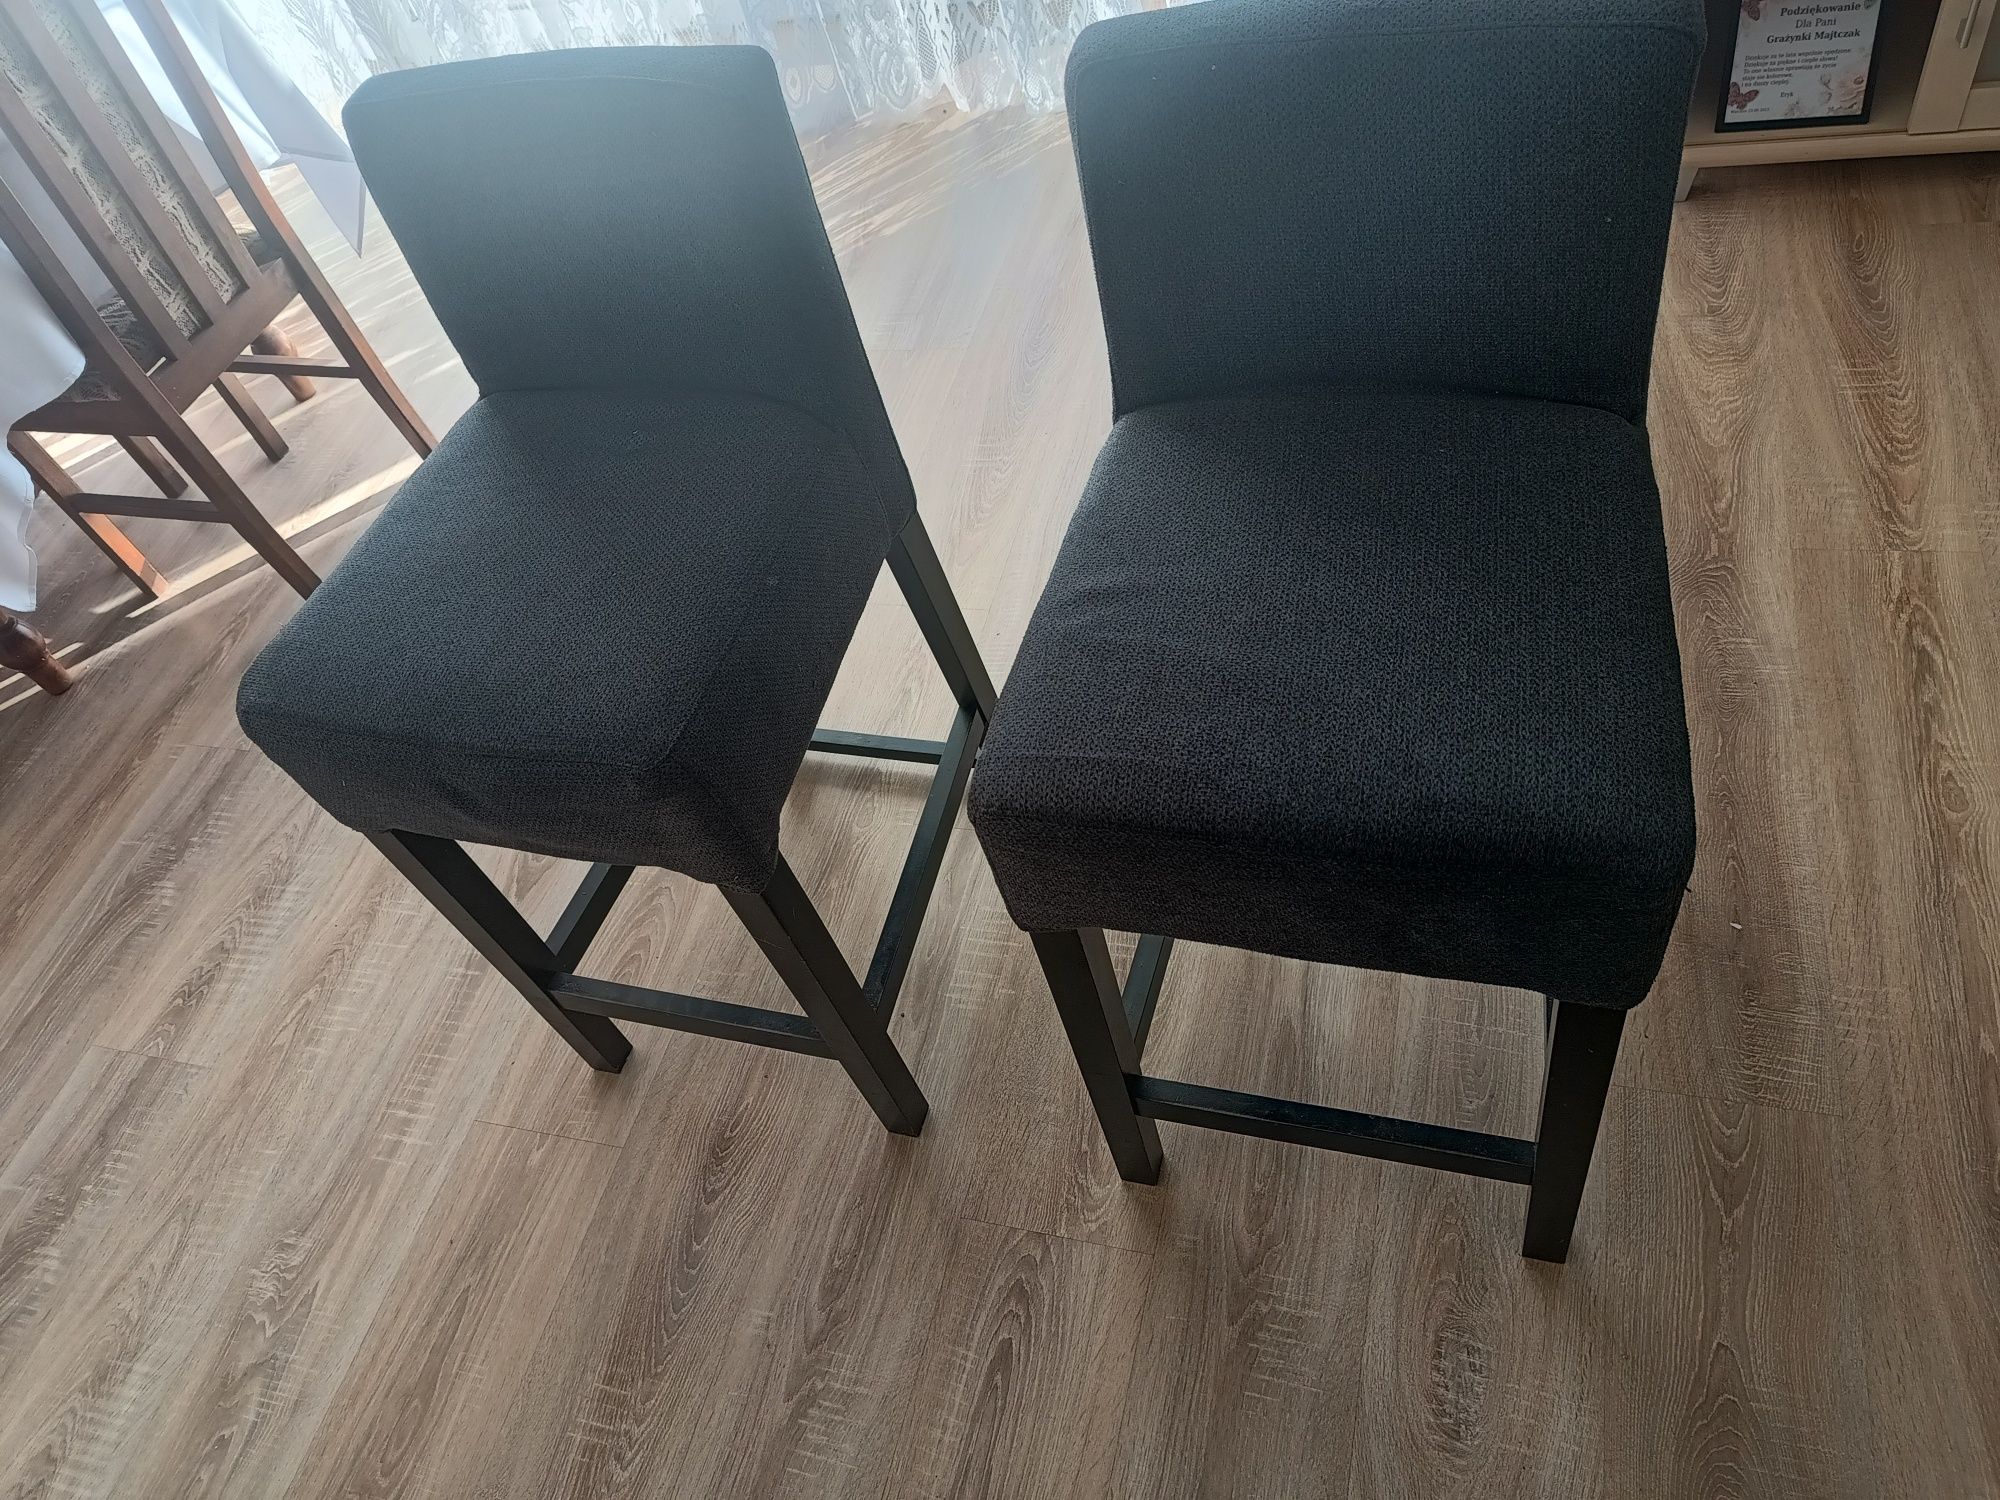 Sprzedam piękne dwa krzesła chokery